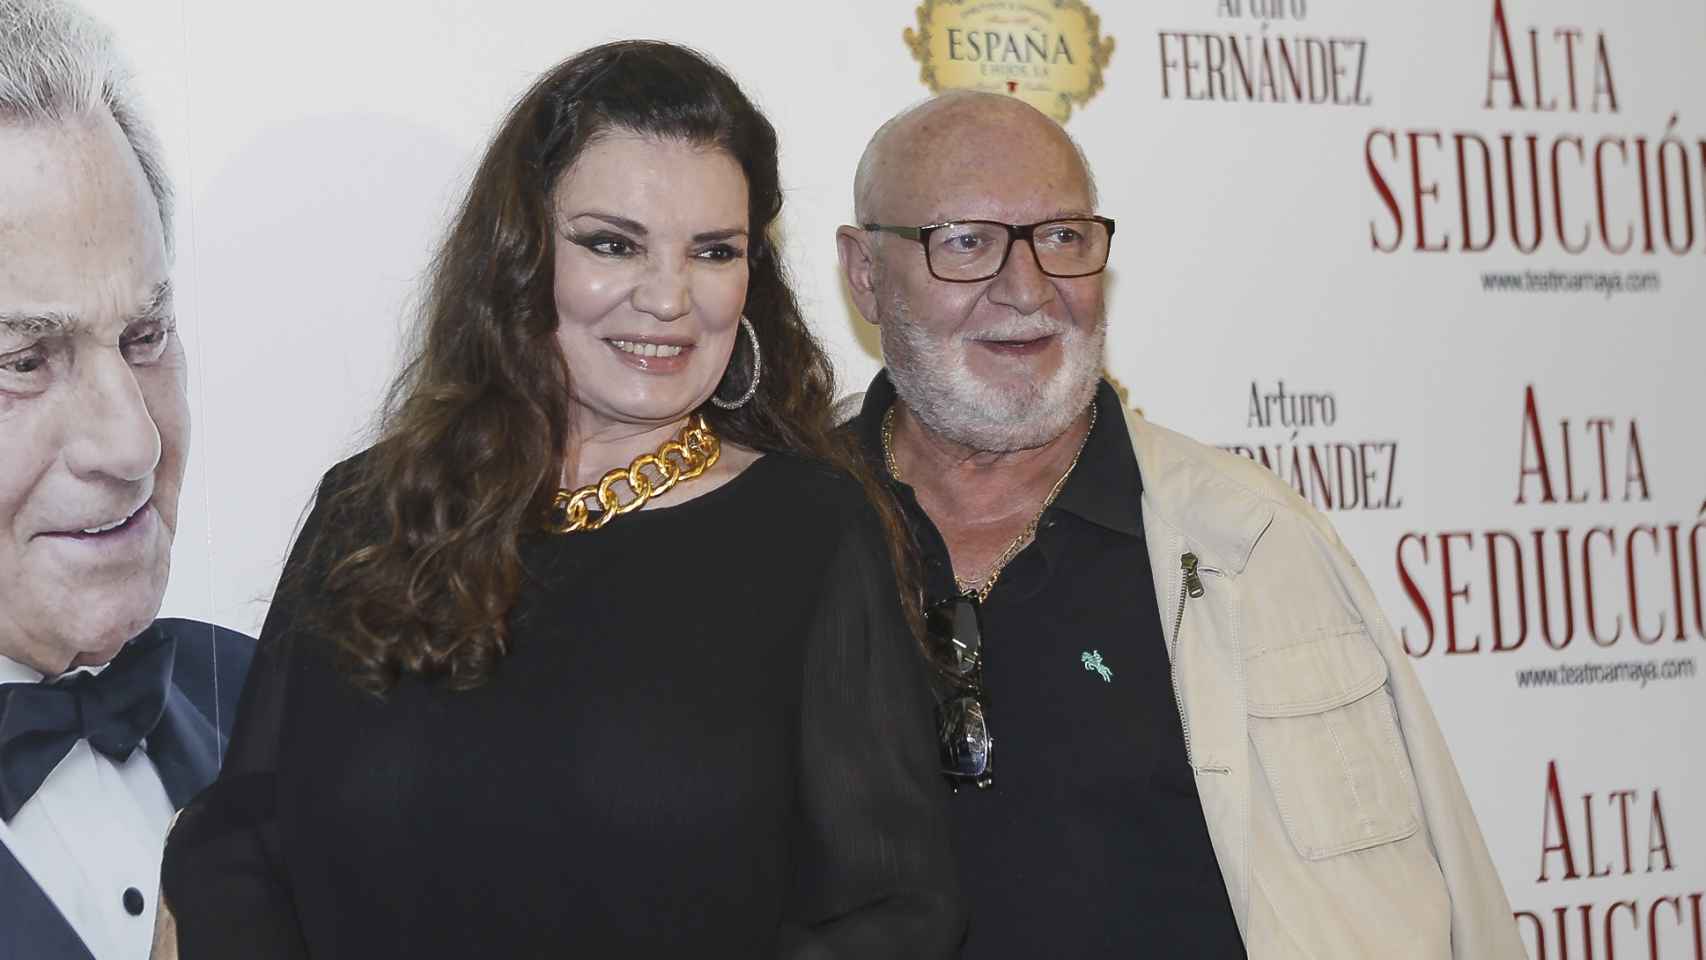 María José Cantudo junto al actor Pepe Ruiz en la presentación de 'Alta seducción' en 2017.